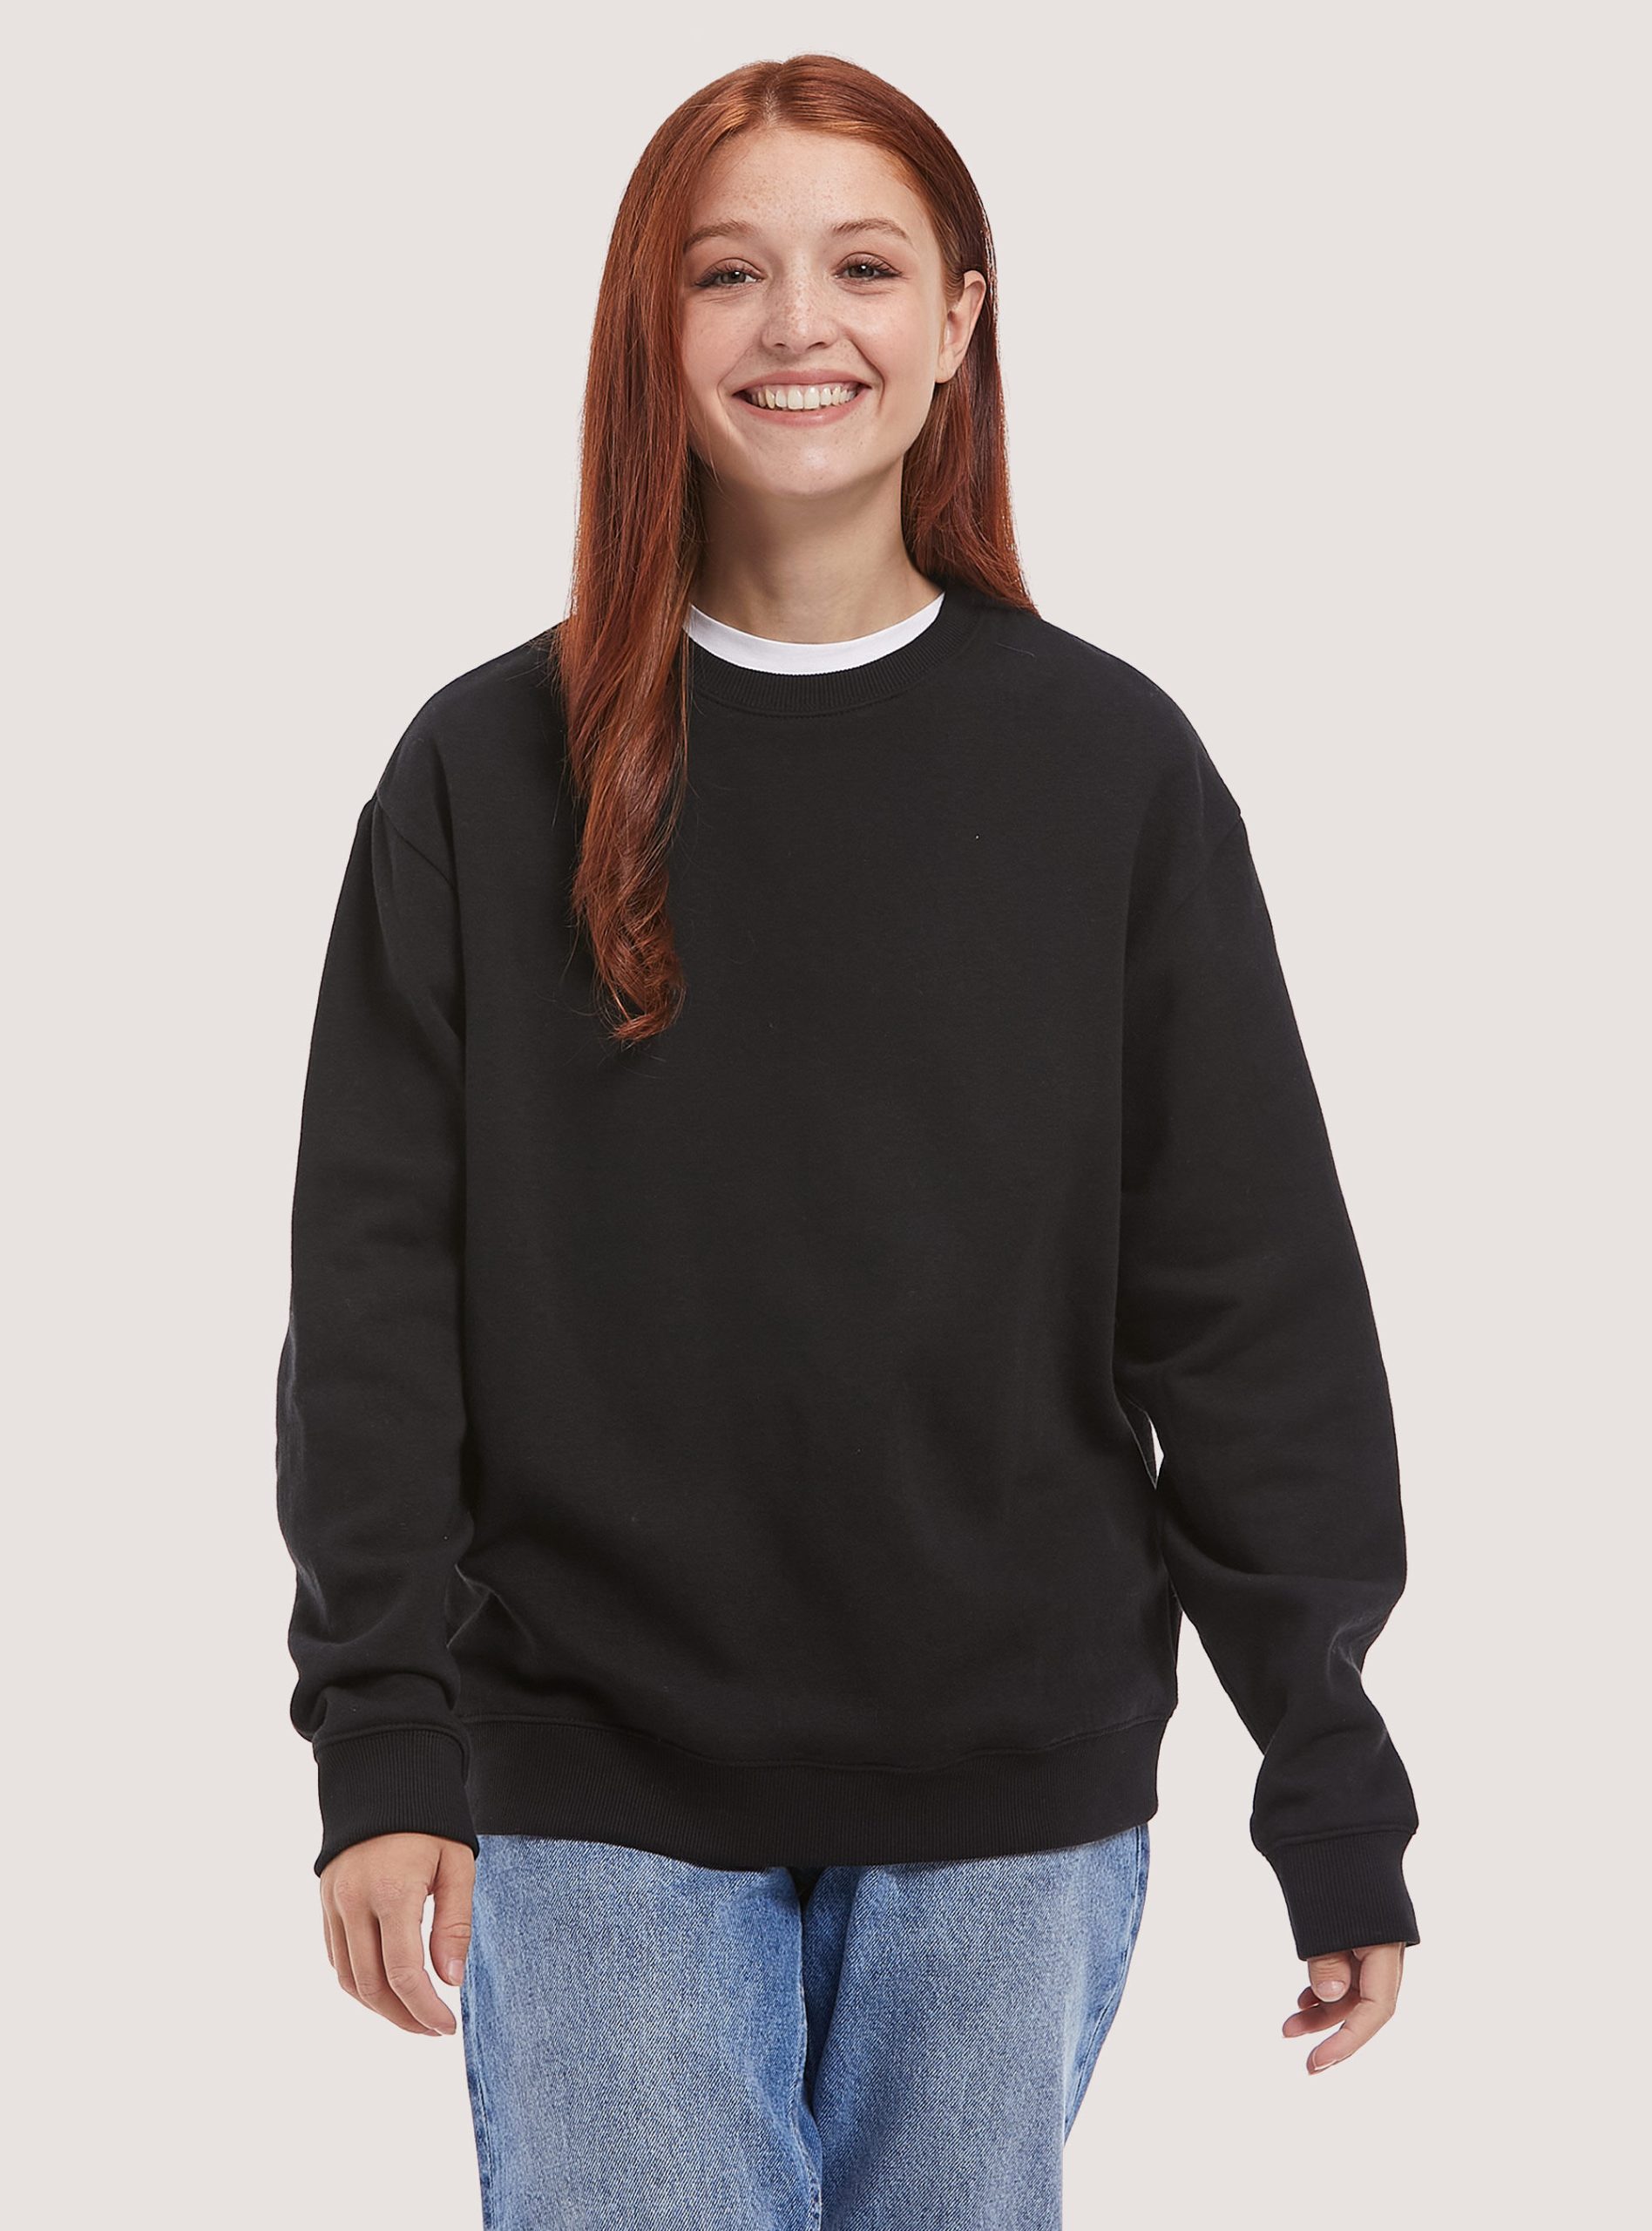 Bk1 Black Frauen Sweatshirts Zufrieden Alcott Plain Cotton Crew-Neck Sweatshirt – 2